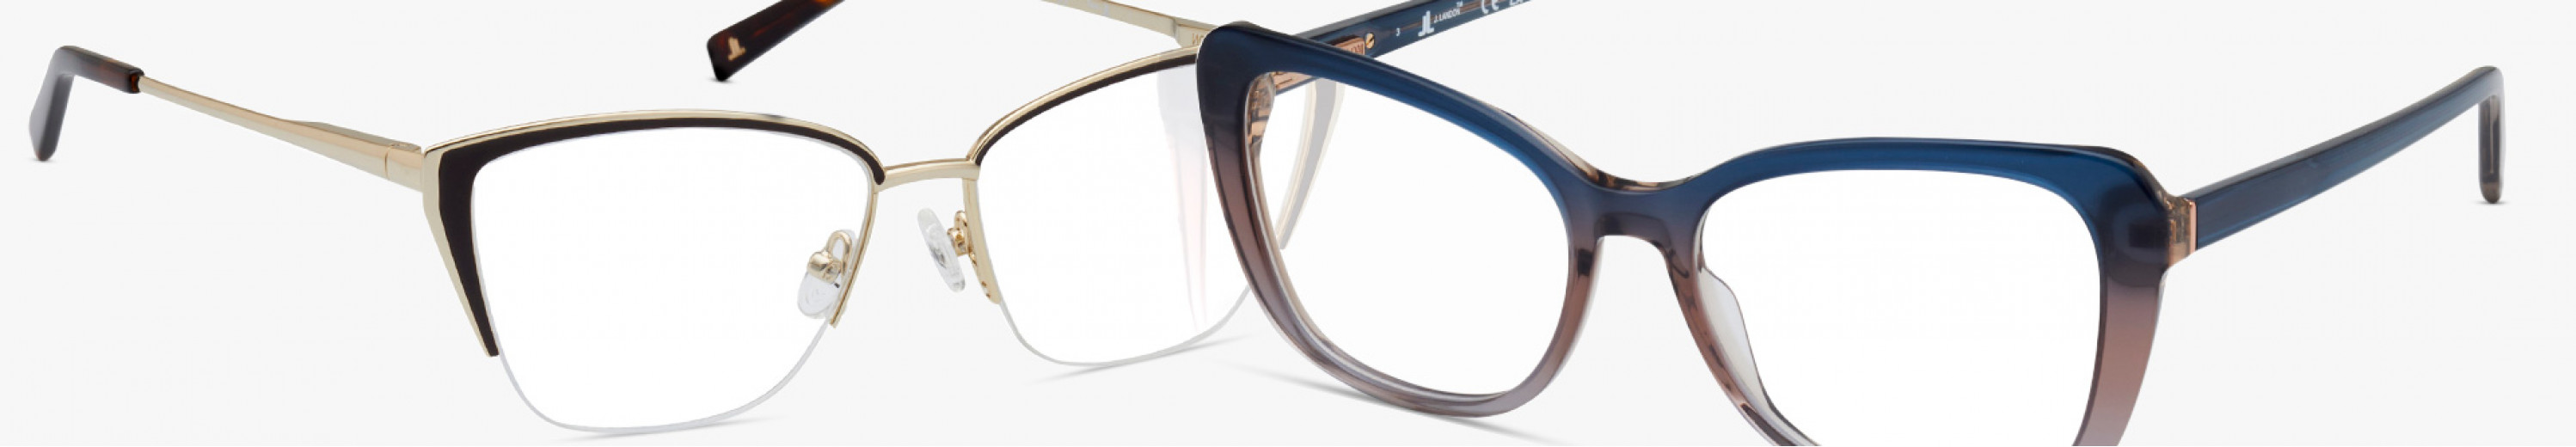 J. Landon Glasses and Eyewear